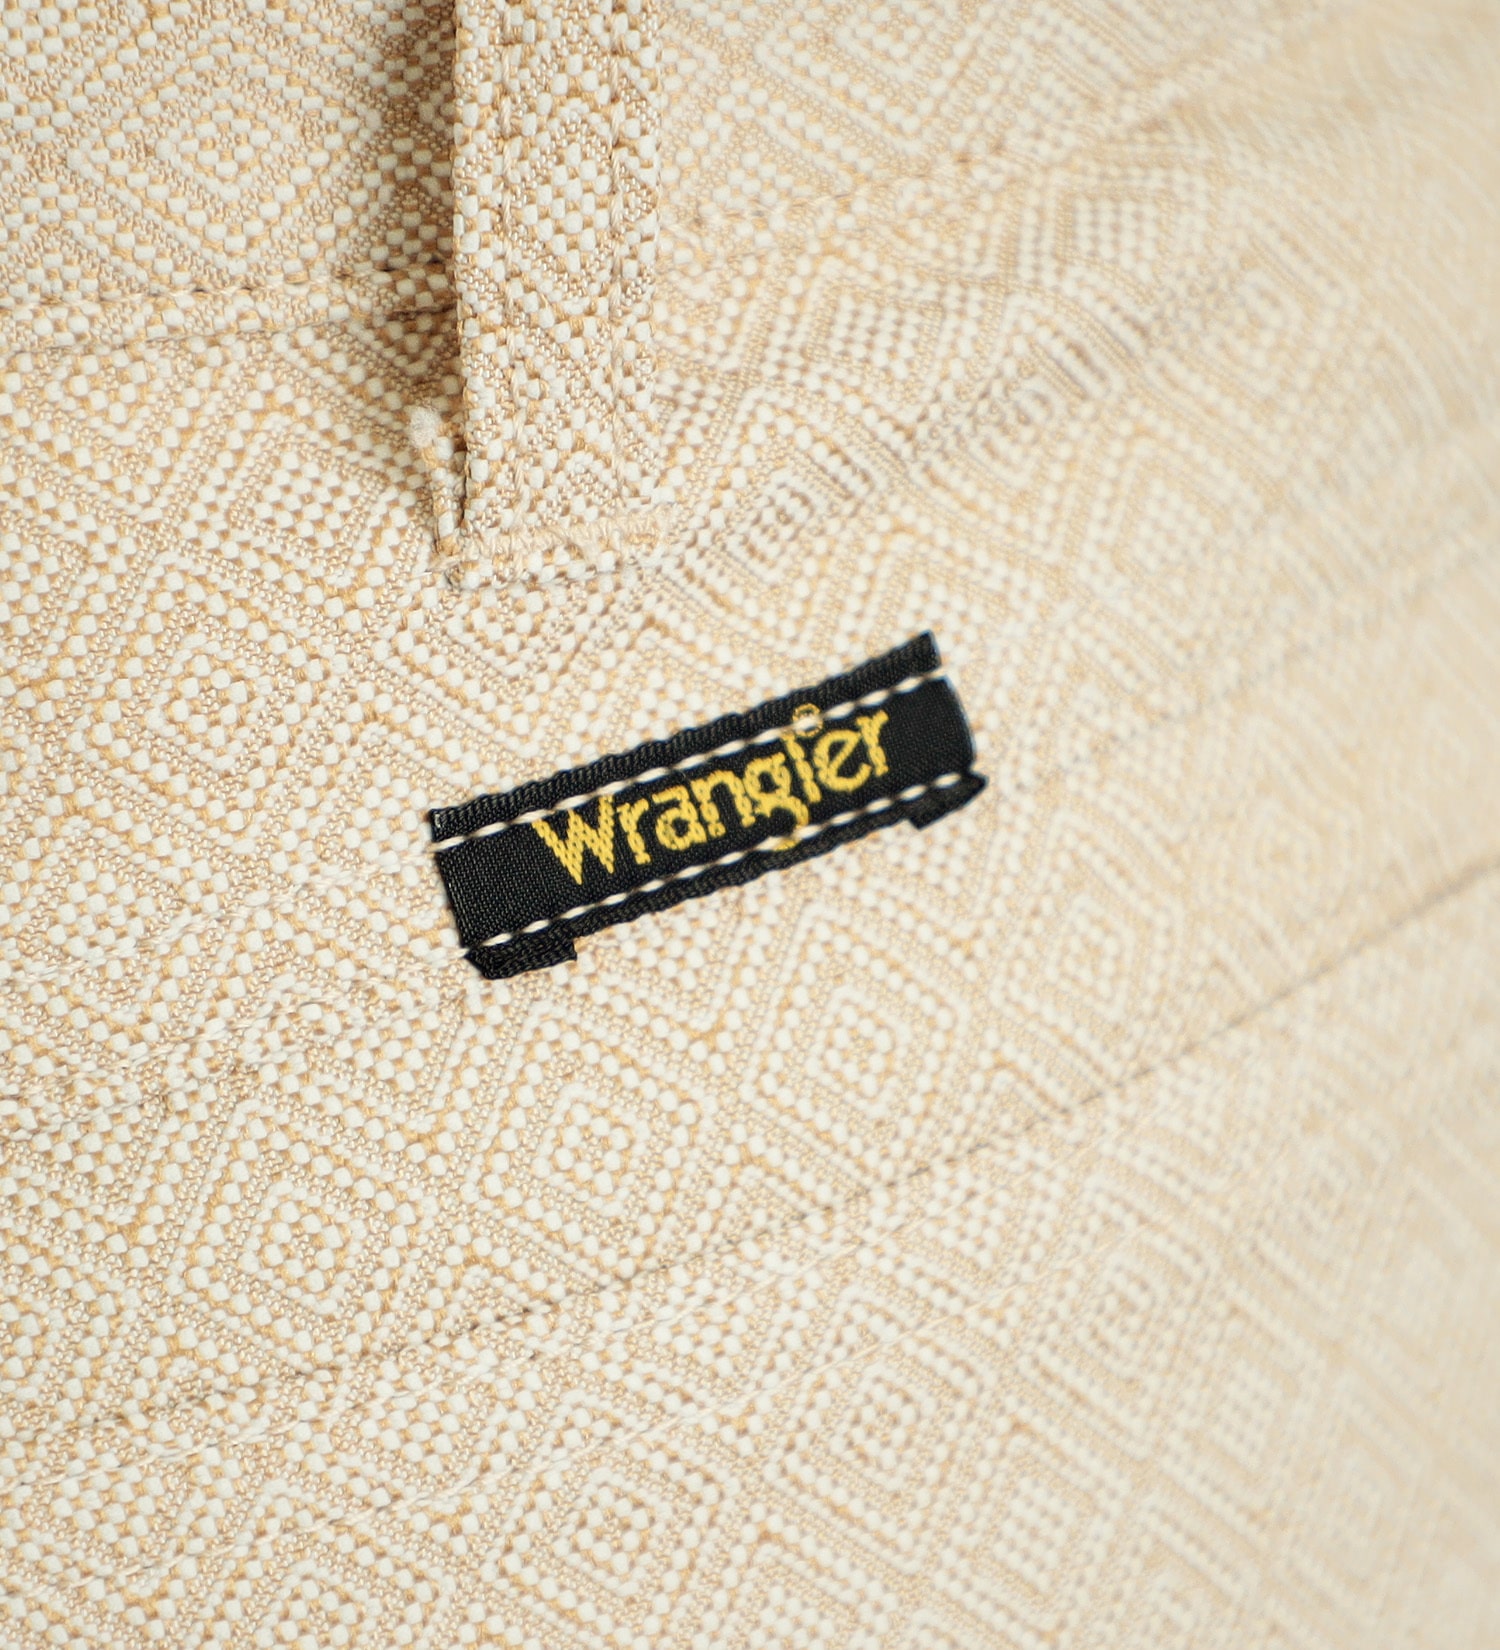 Wrangler(ラングラー)の【ベストセラー】WRANGLER WRANCHER/ランチャー フレアードレスパンツ（レングス74cm）|パンツ/パンツ/メンズ|アイボリー